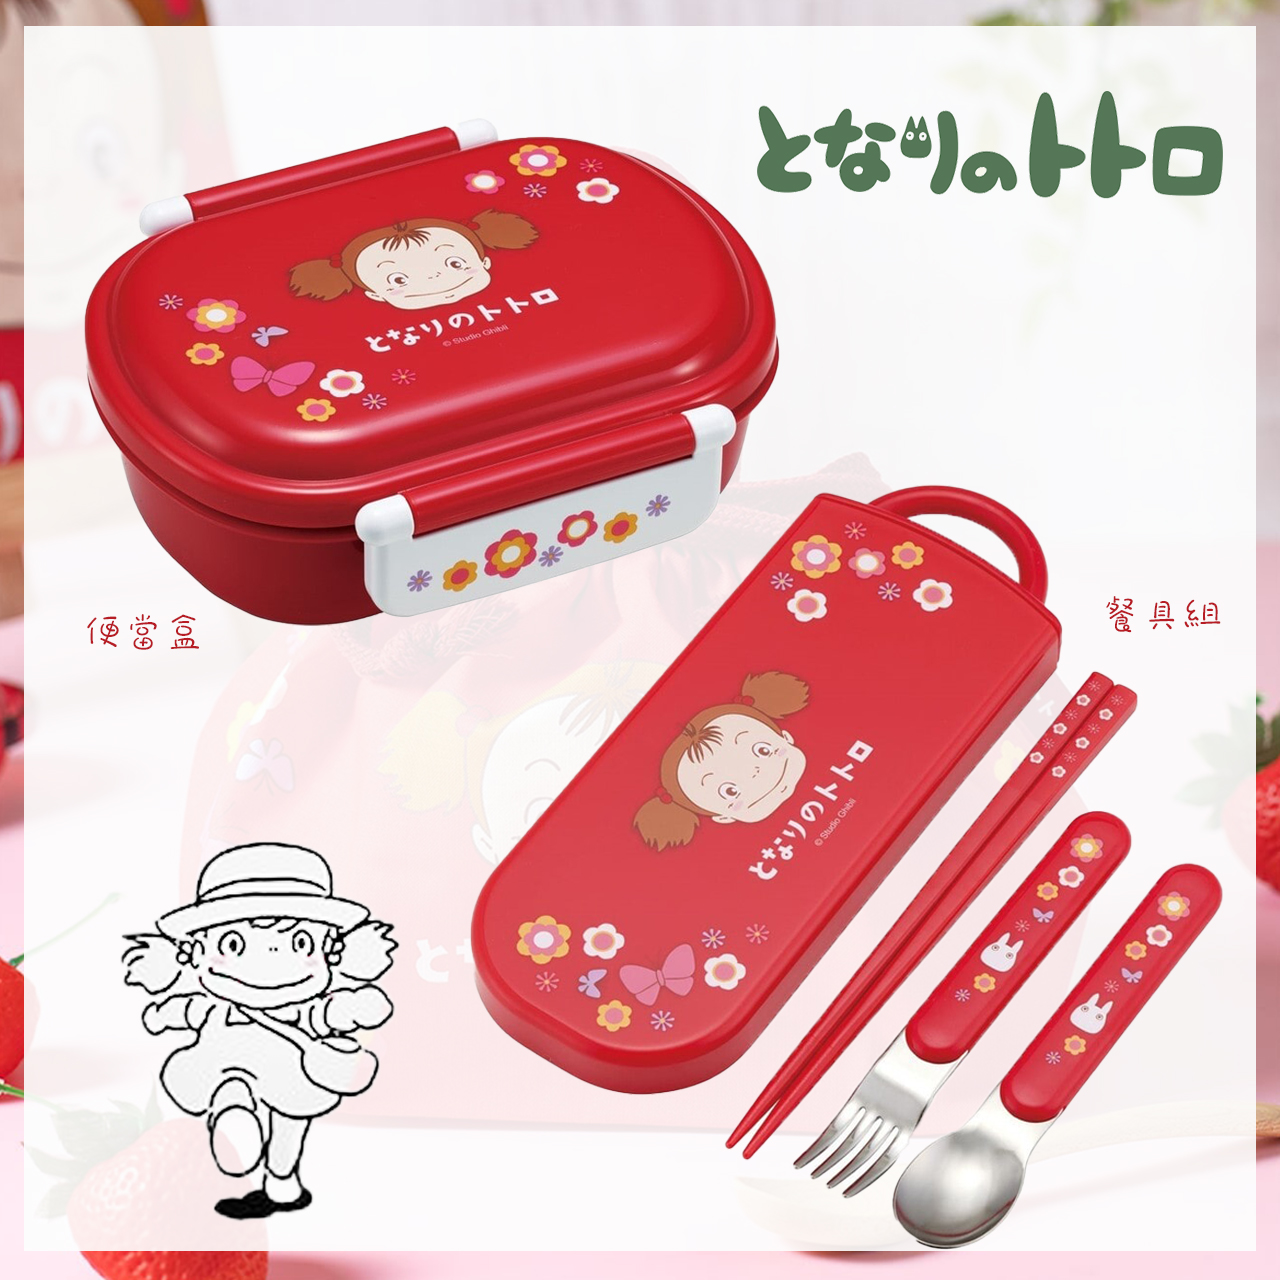 便當盒&餐具組-小梅系列商品 龍貓 TOTORO 宮崎駿 吉卜力 日本進口正版授權